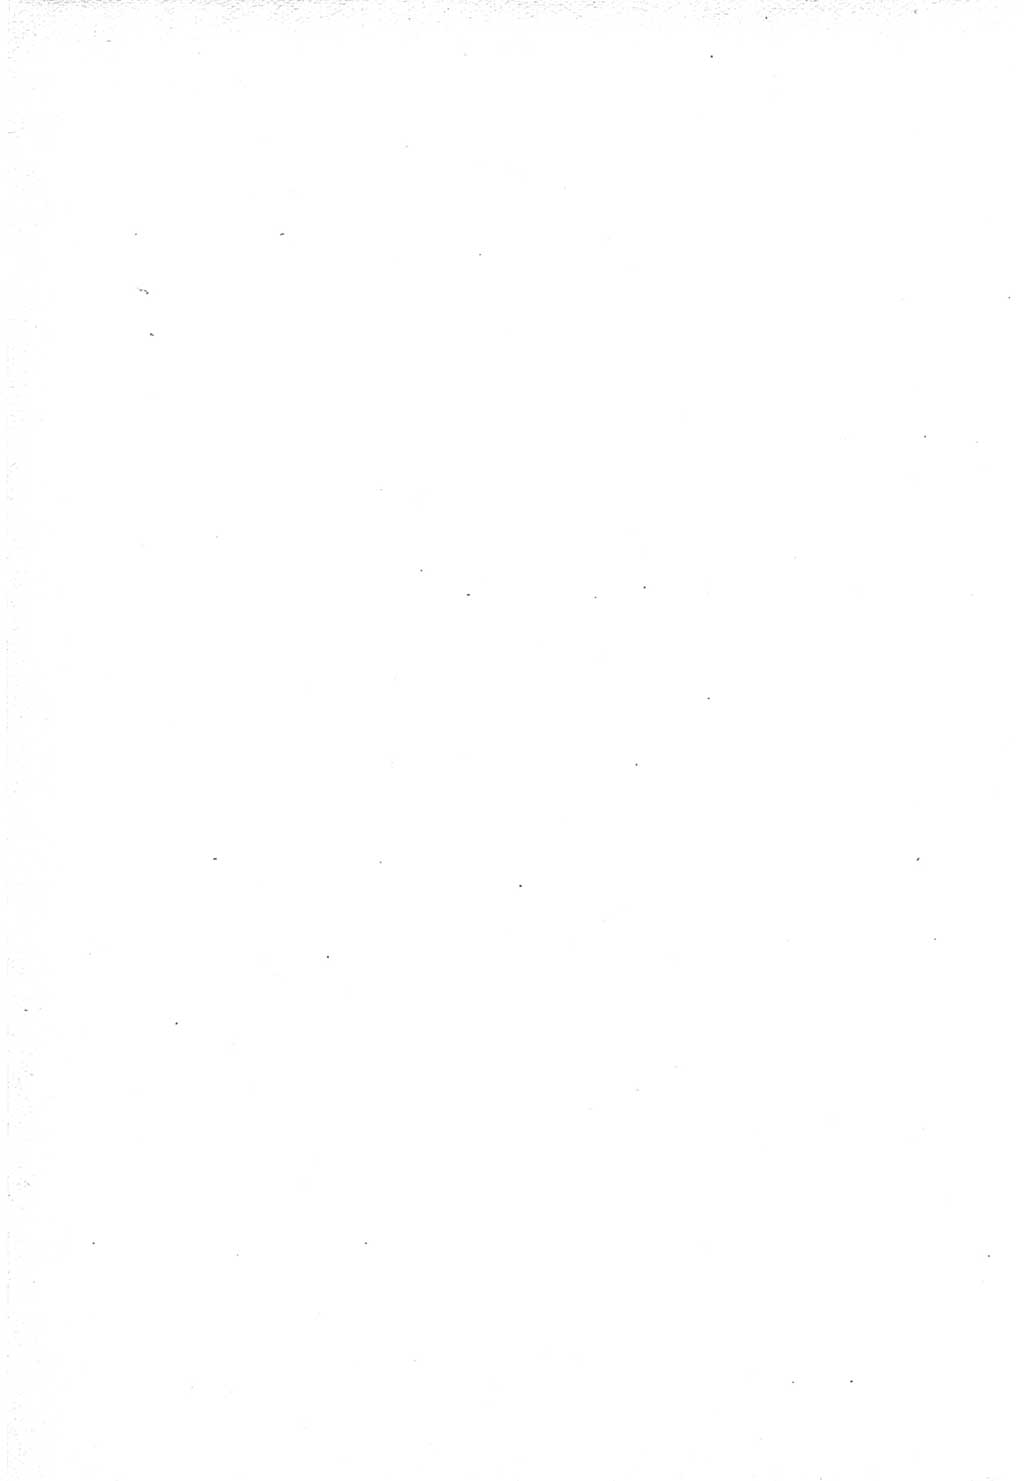 Protokoll der Verhandlungen des Ⅵ. Parteitages der Sozialistischen Einheitspartei Deutschlands (SED) [Deutsche Demokratische Republik (DDR)] 1963, Band Ⅳ, Seite 2 (Prot. Verh. Ⅵ. PT SED DDR 1963, Bd. Ⅳ, S. 2)